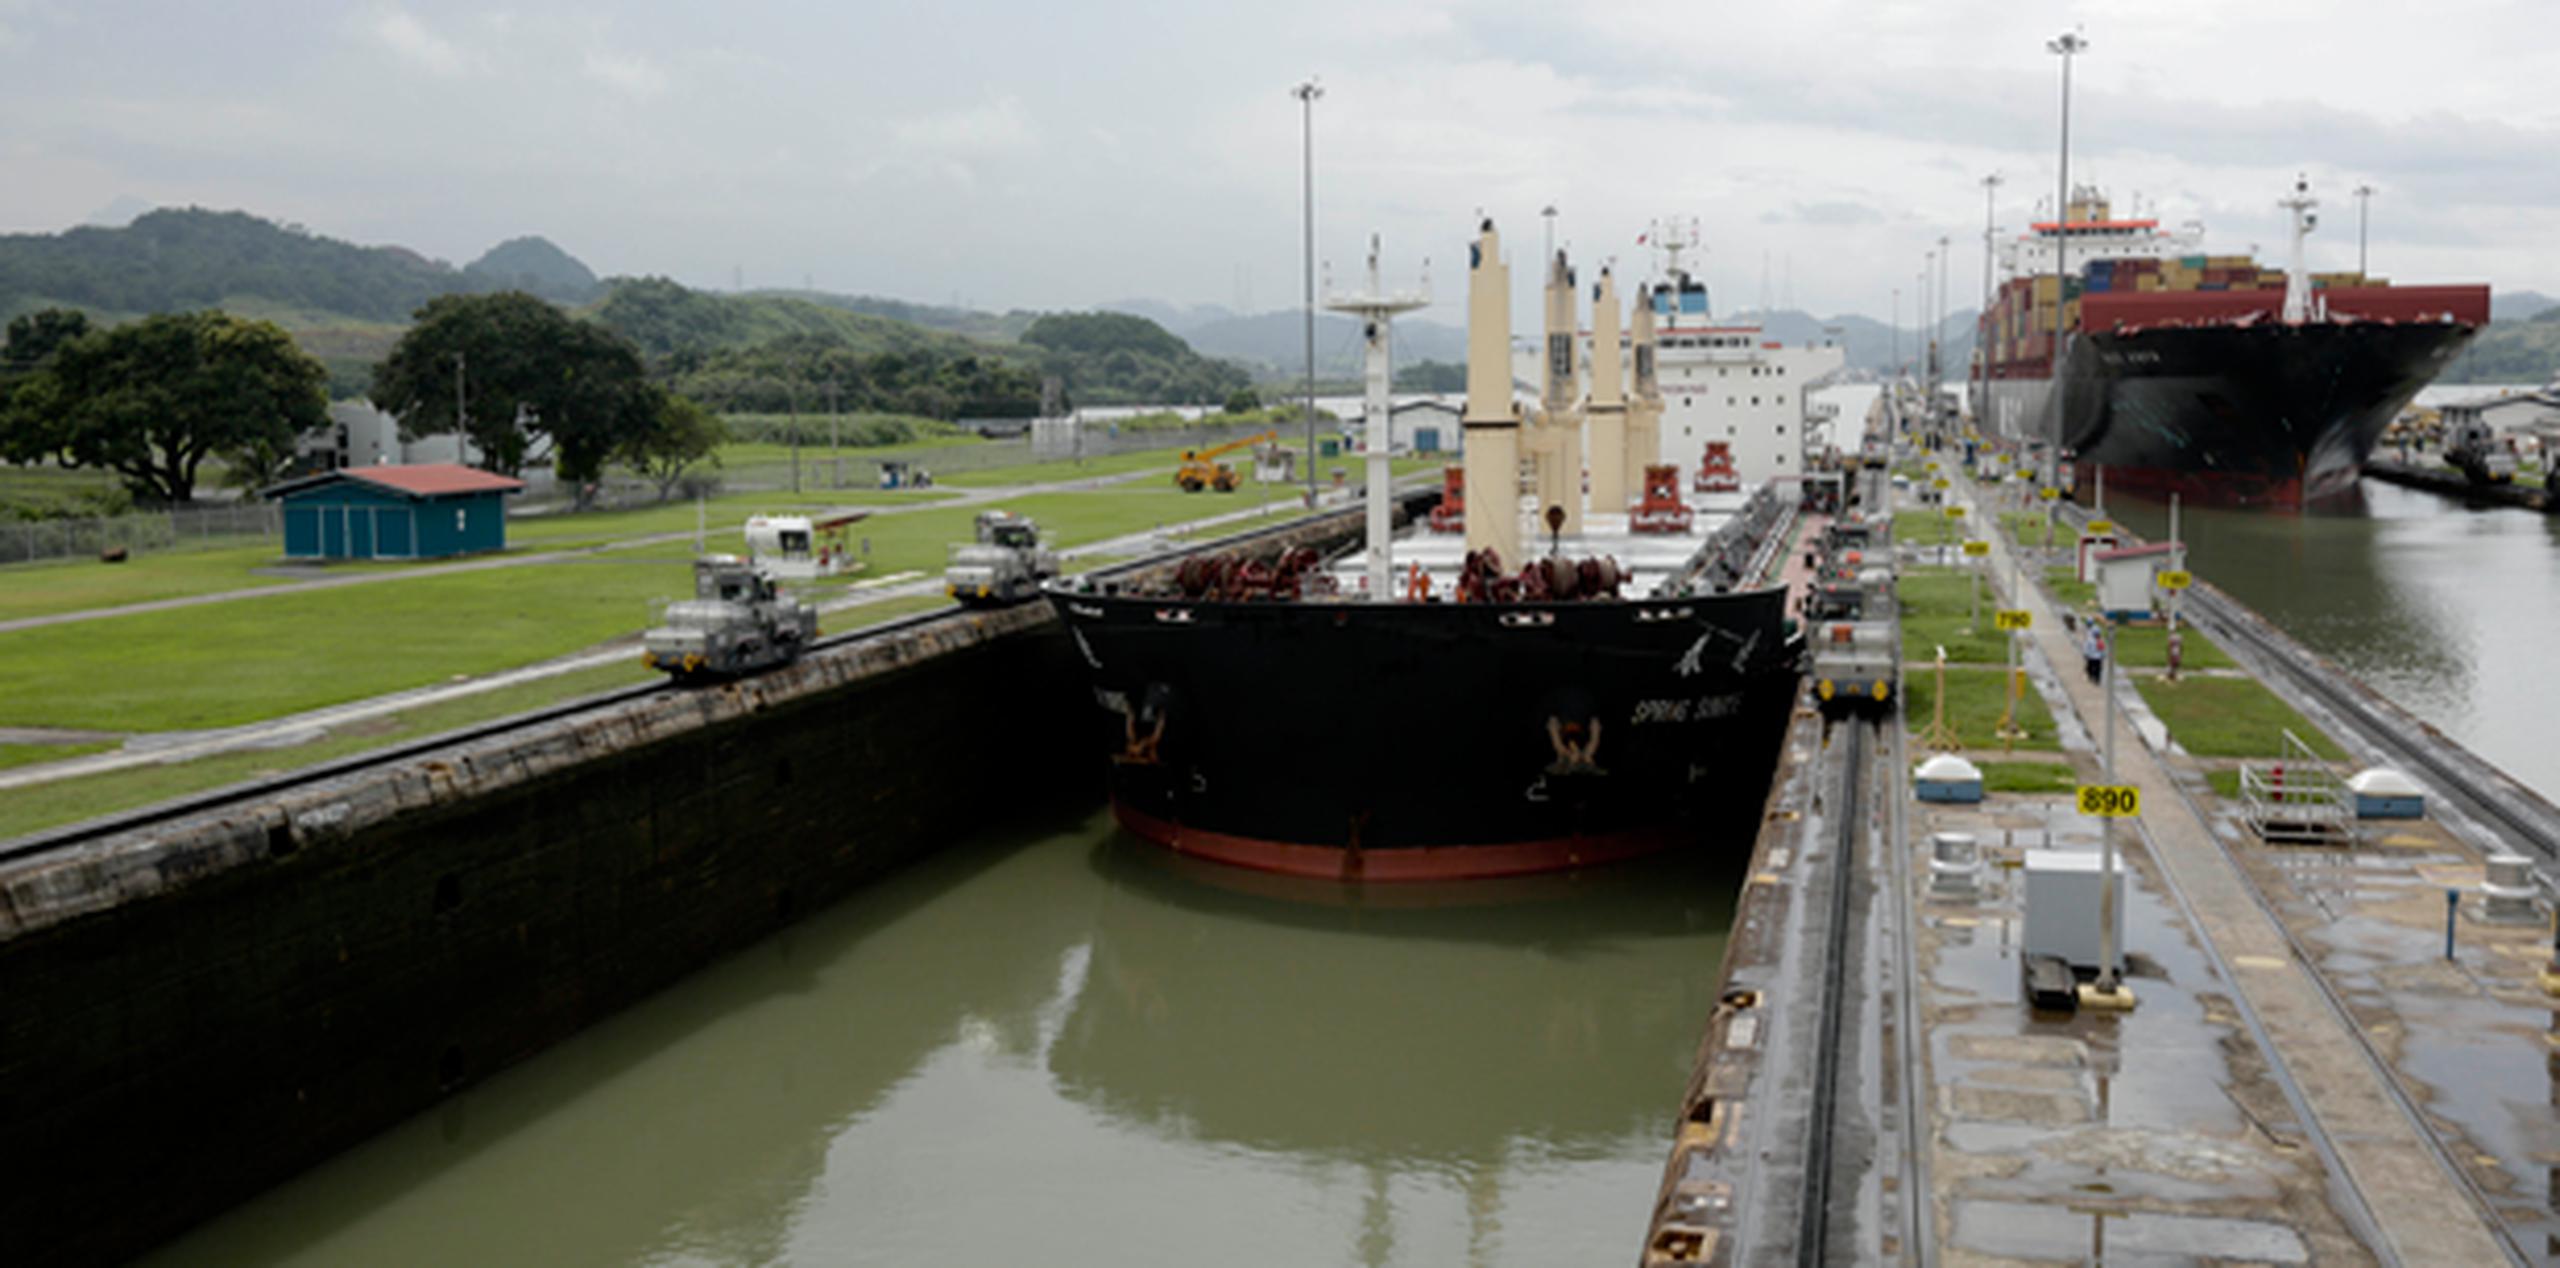 El Canal, que en su momento revolucionó el comercio mundial, ha ido perdiendo relevancia al no poder admitir los barcos "post-Panamax" de gran calado que se usan ahora. (AP)